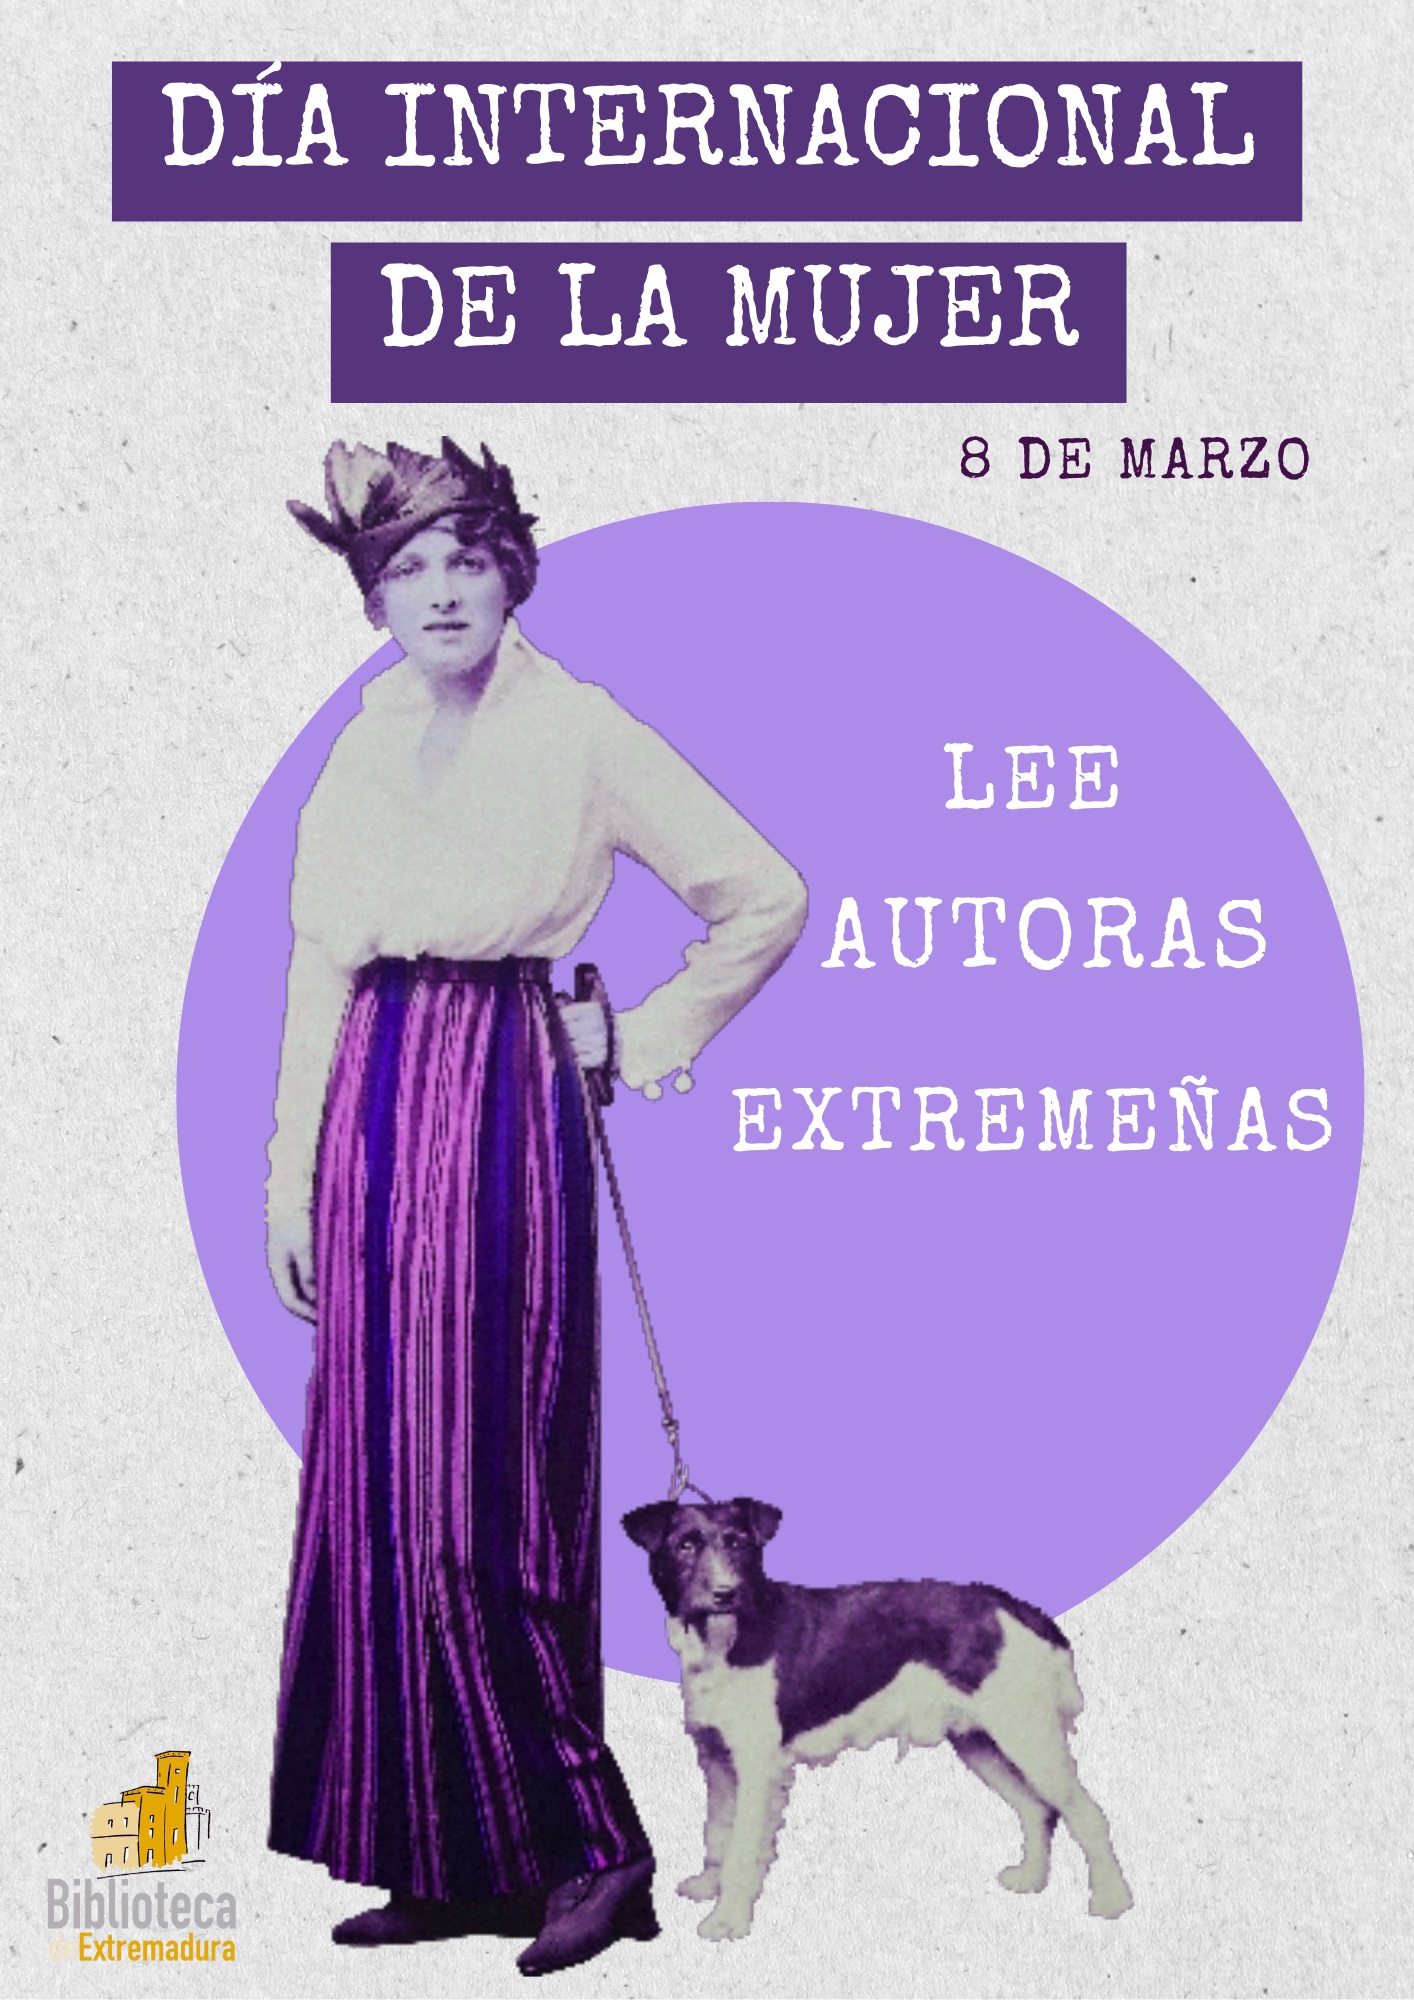 Image 1 of article Las bibliotecas gestionadas por la Junta de Extremadura se suman a las actividades conmemorativas del Día Internacional de la Mujer